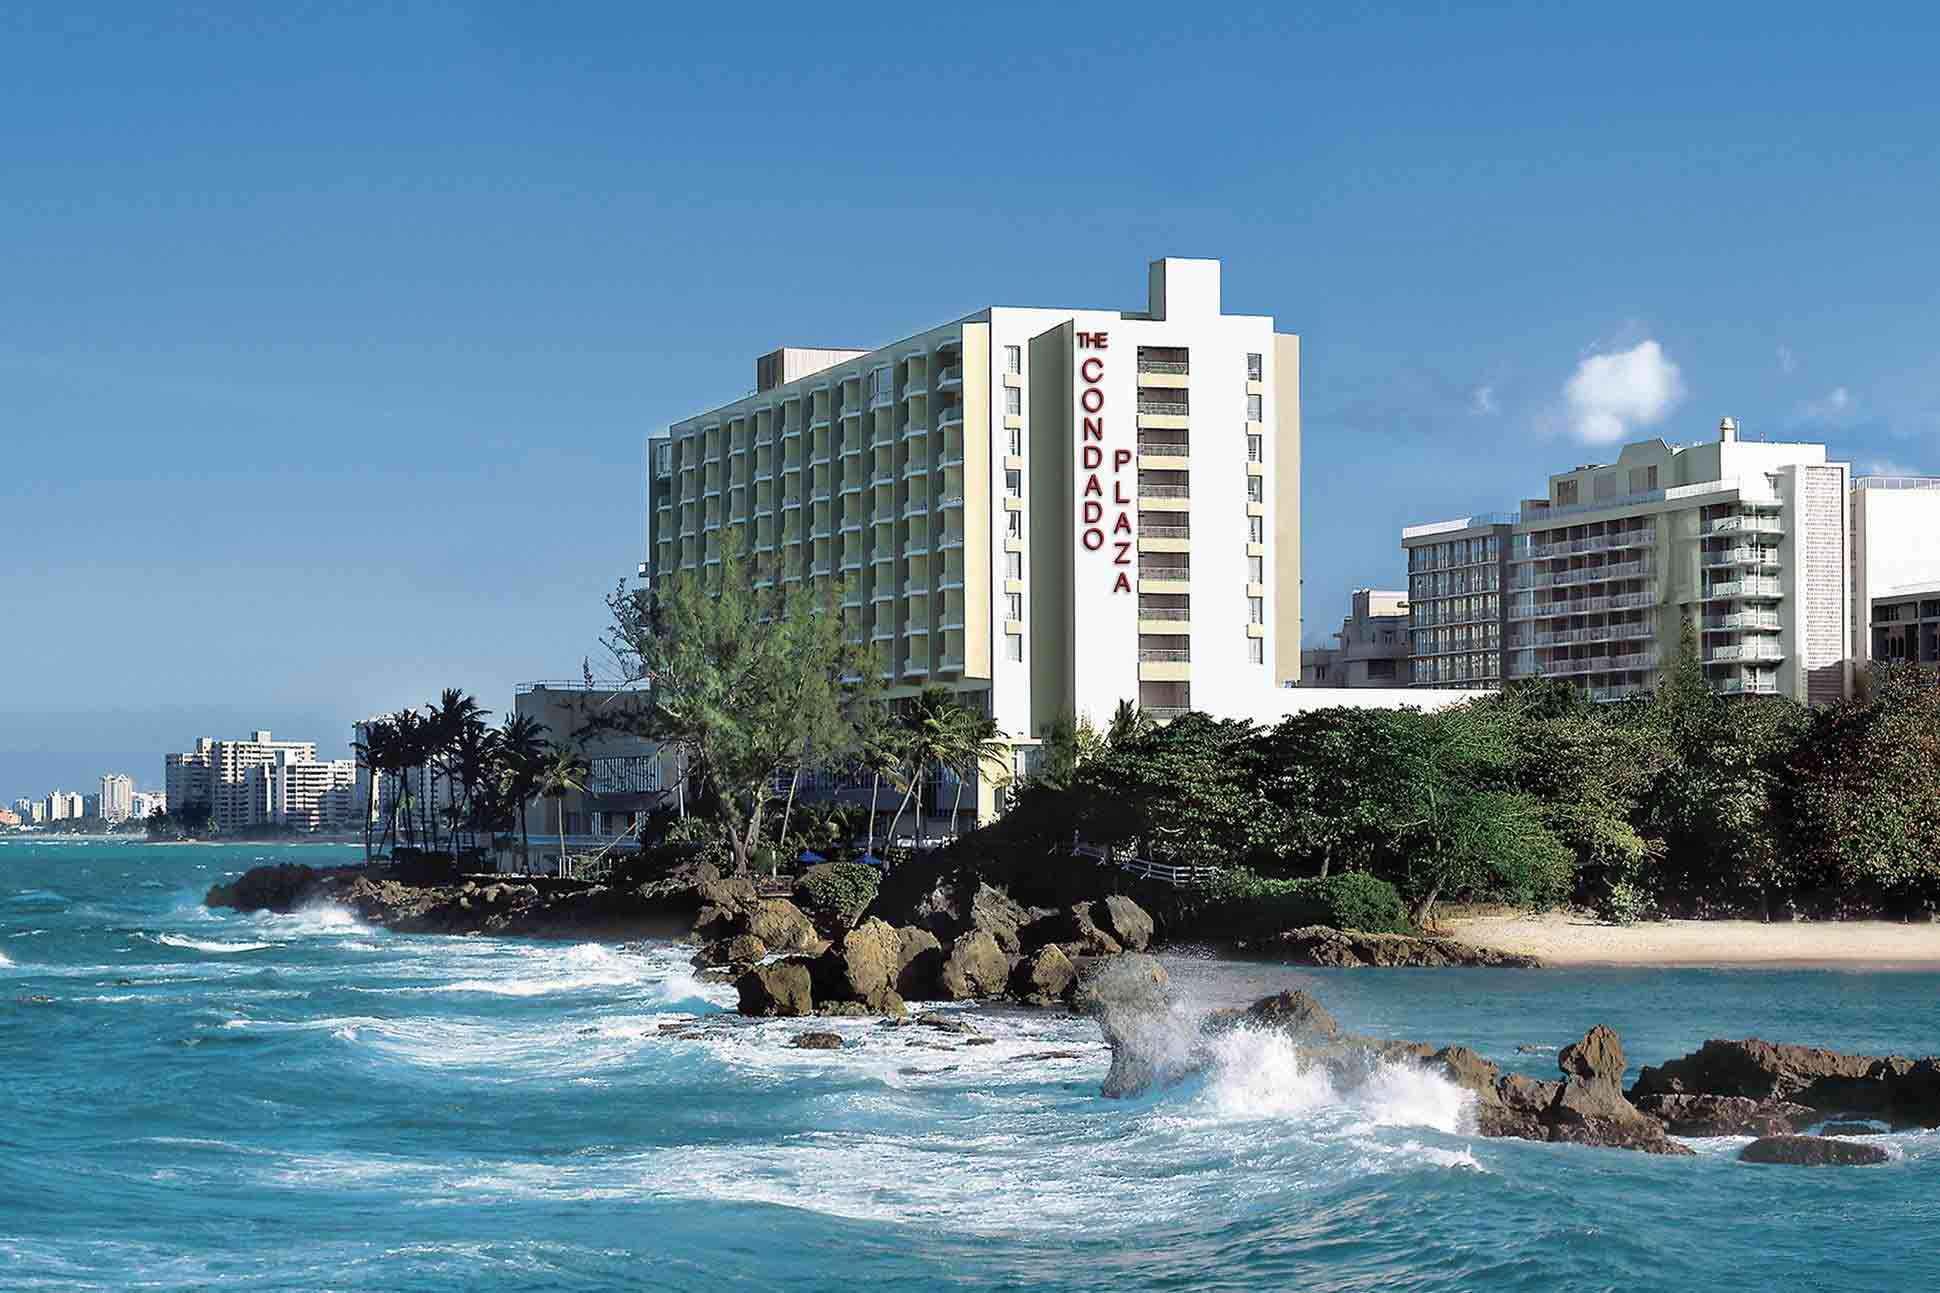 The Condado Plaza Hilton, San Juan, Puerto Rico, USA